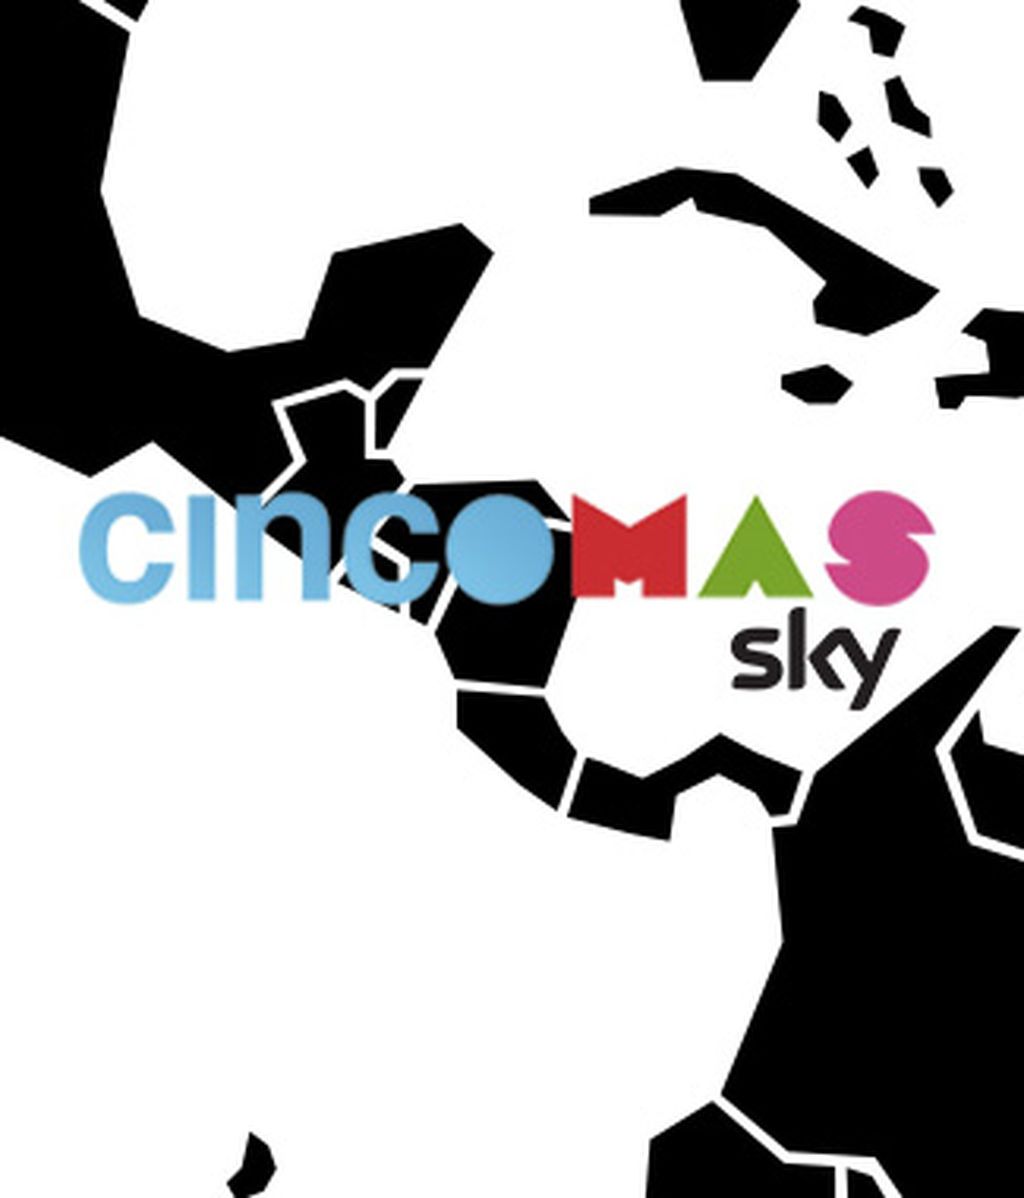 CincoMAS inicia sus emisiones en Costa Rica y Guatemala y amplía su señal en Panamá